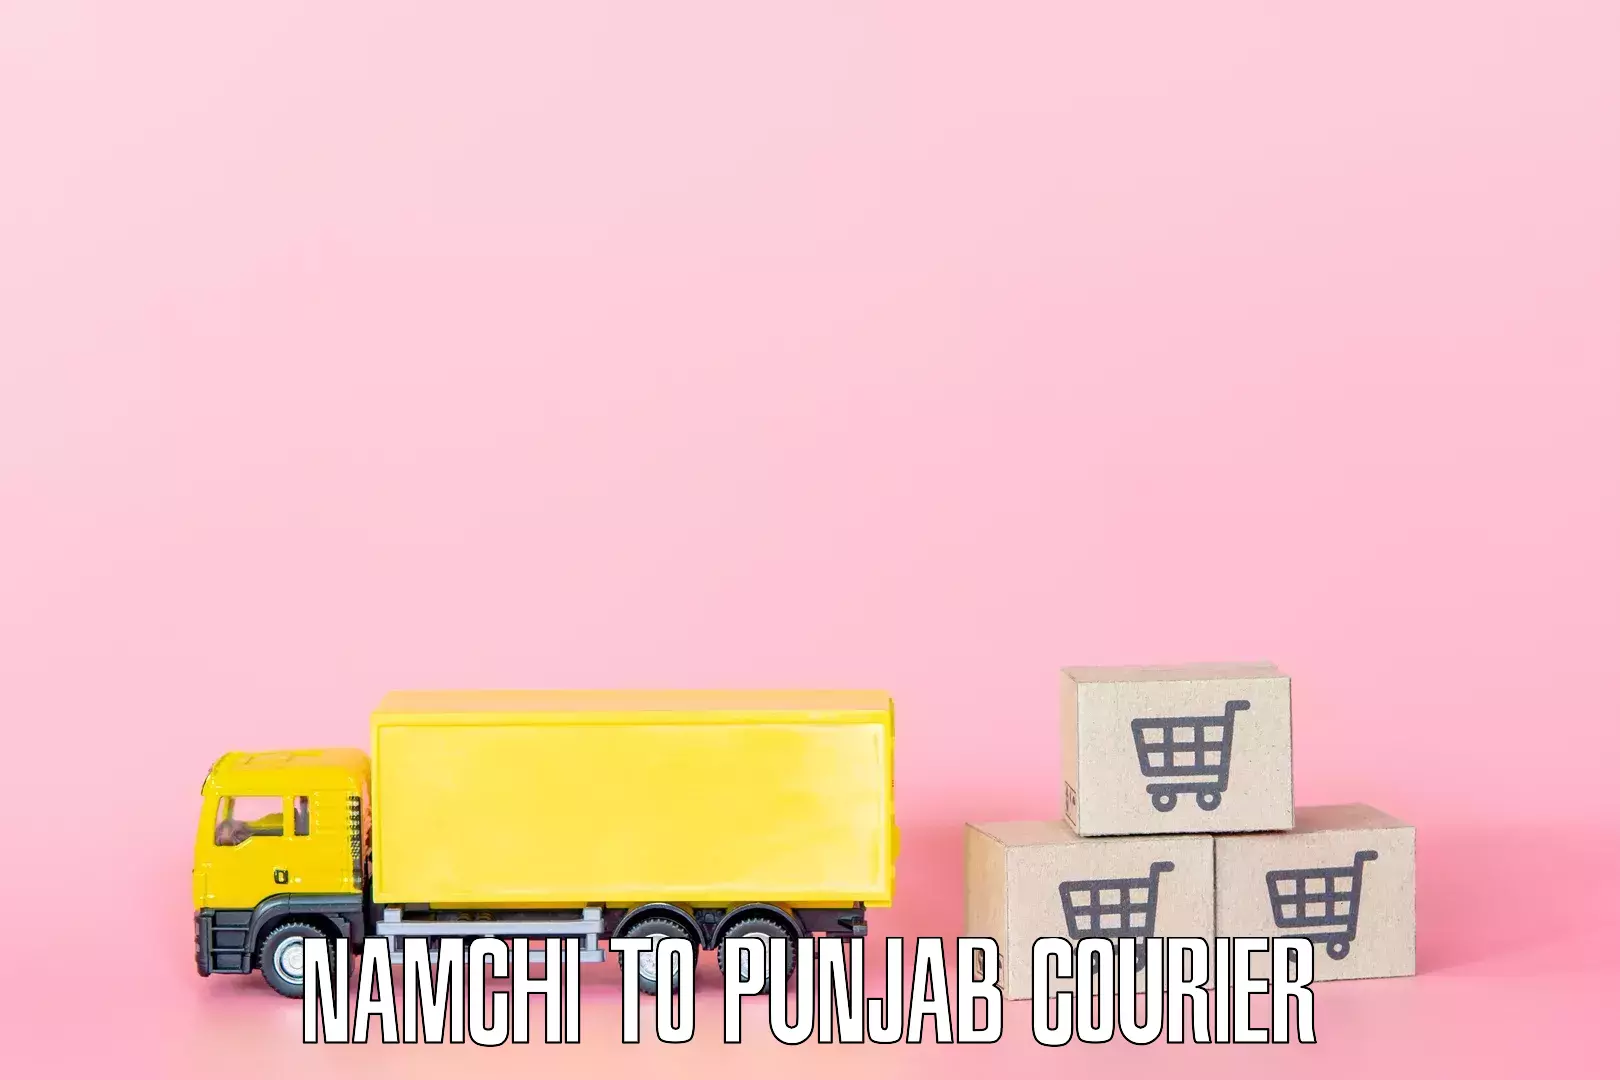 Furniture transport service Namchi to Punjab